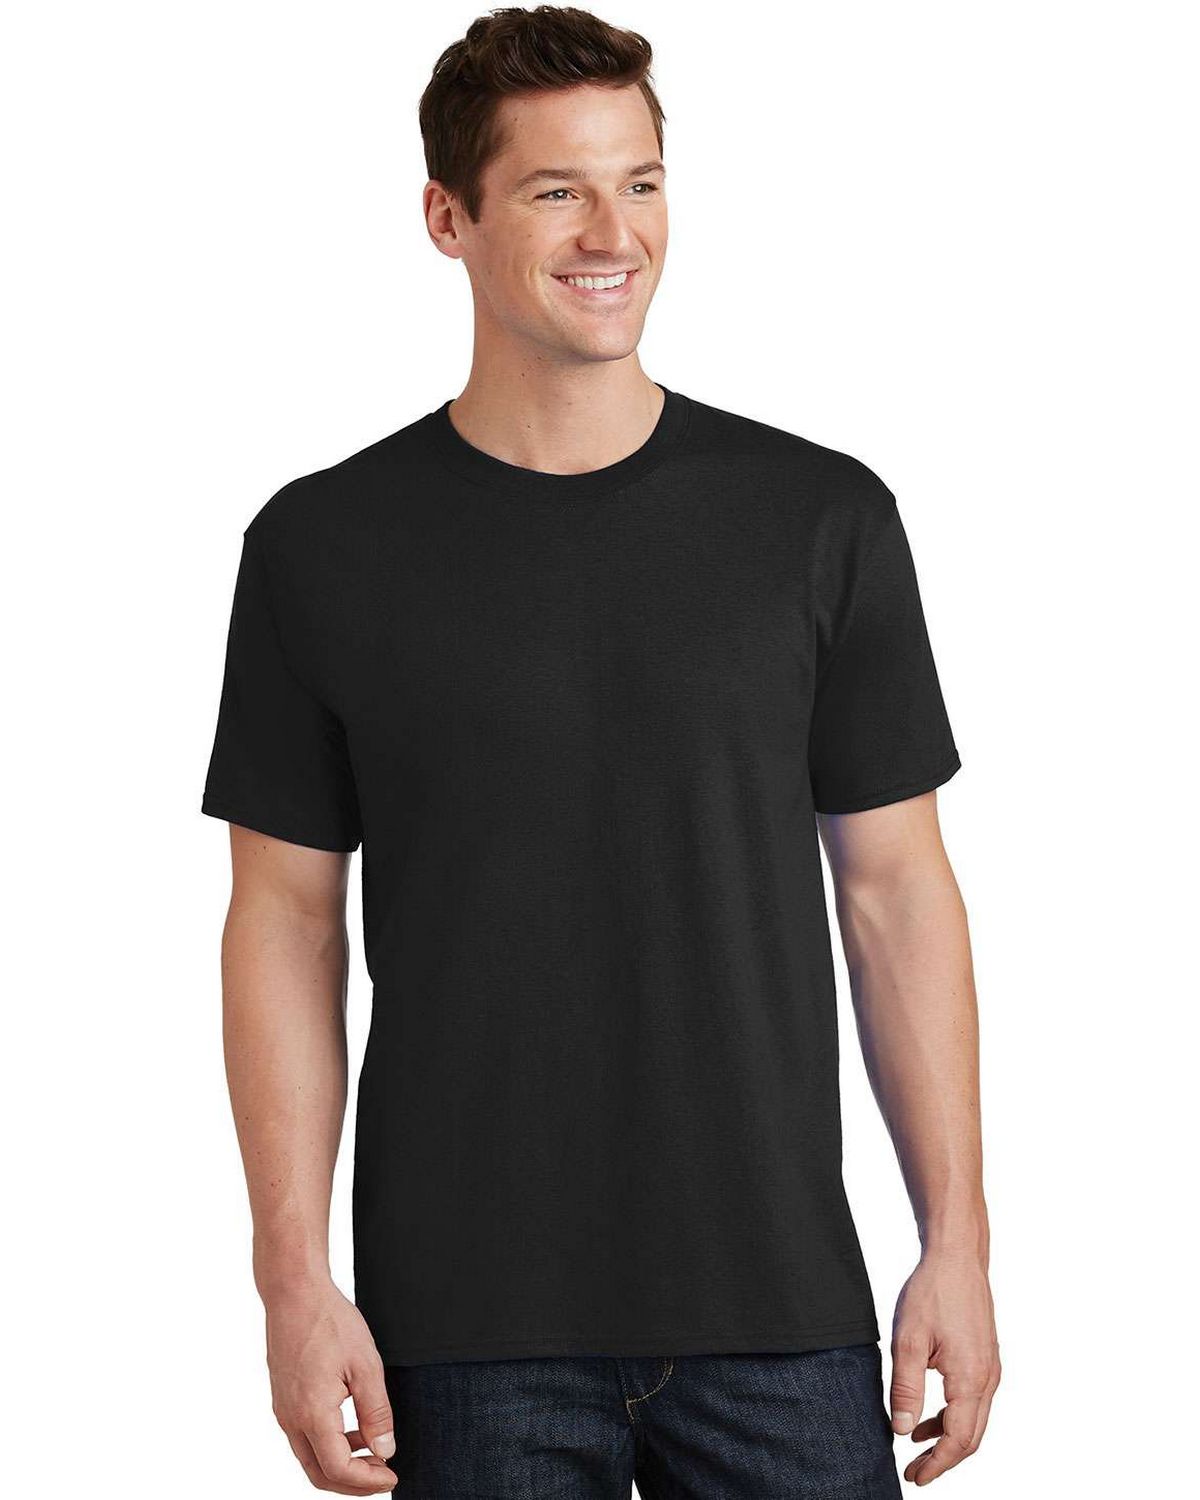 Port & Company PC54 100% Cotton T-Shirt - ApparelnBags.com